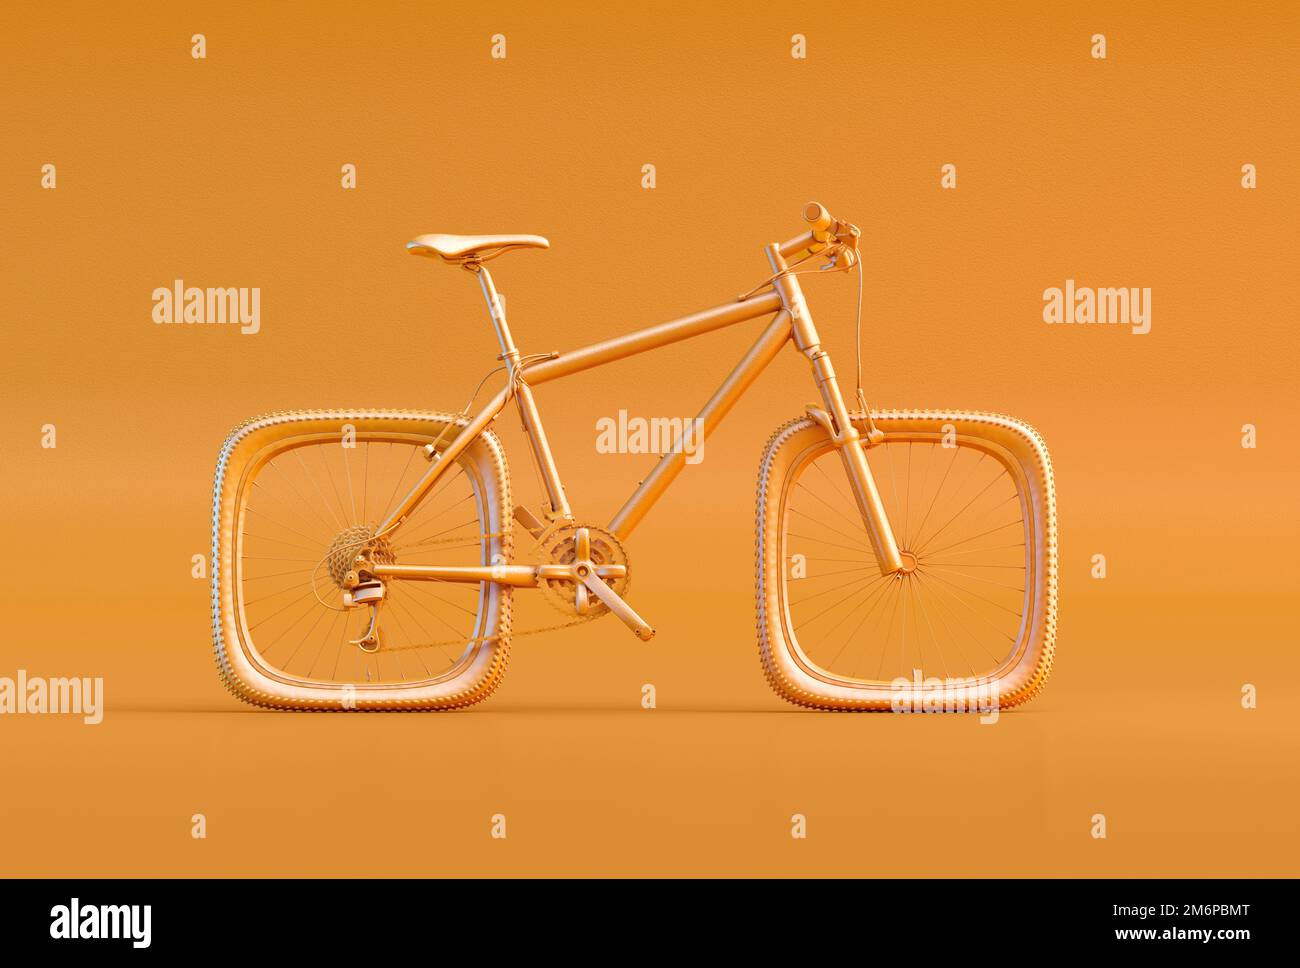 Bici con ruote quadrate isolate su sfondo arancione. Risoluzione dei problemi, creatività, soluzione complicata, efficienza aziendale, complessità, difficoltà, Foto Stock